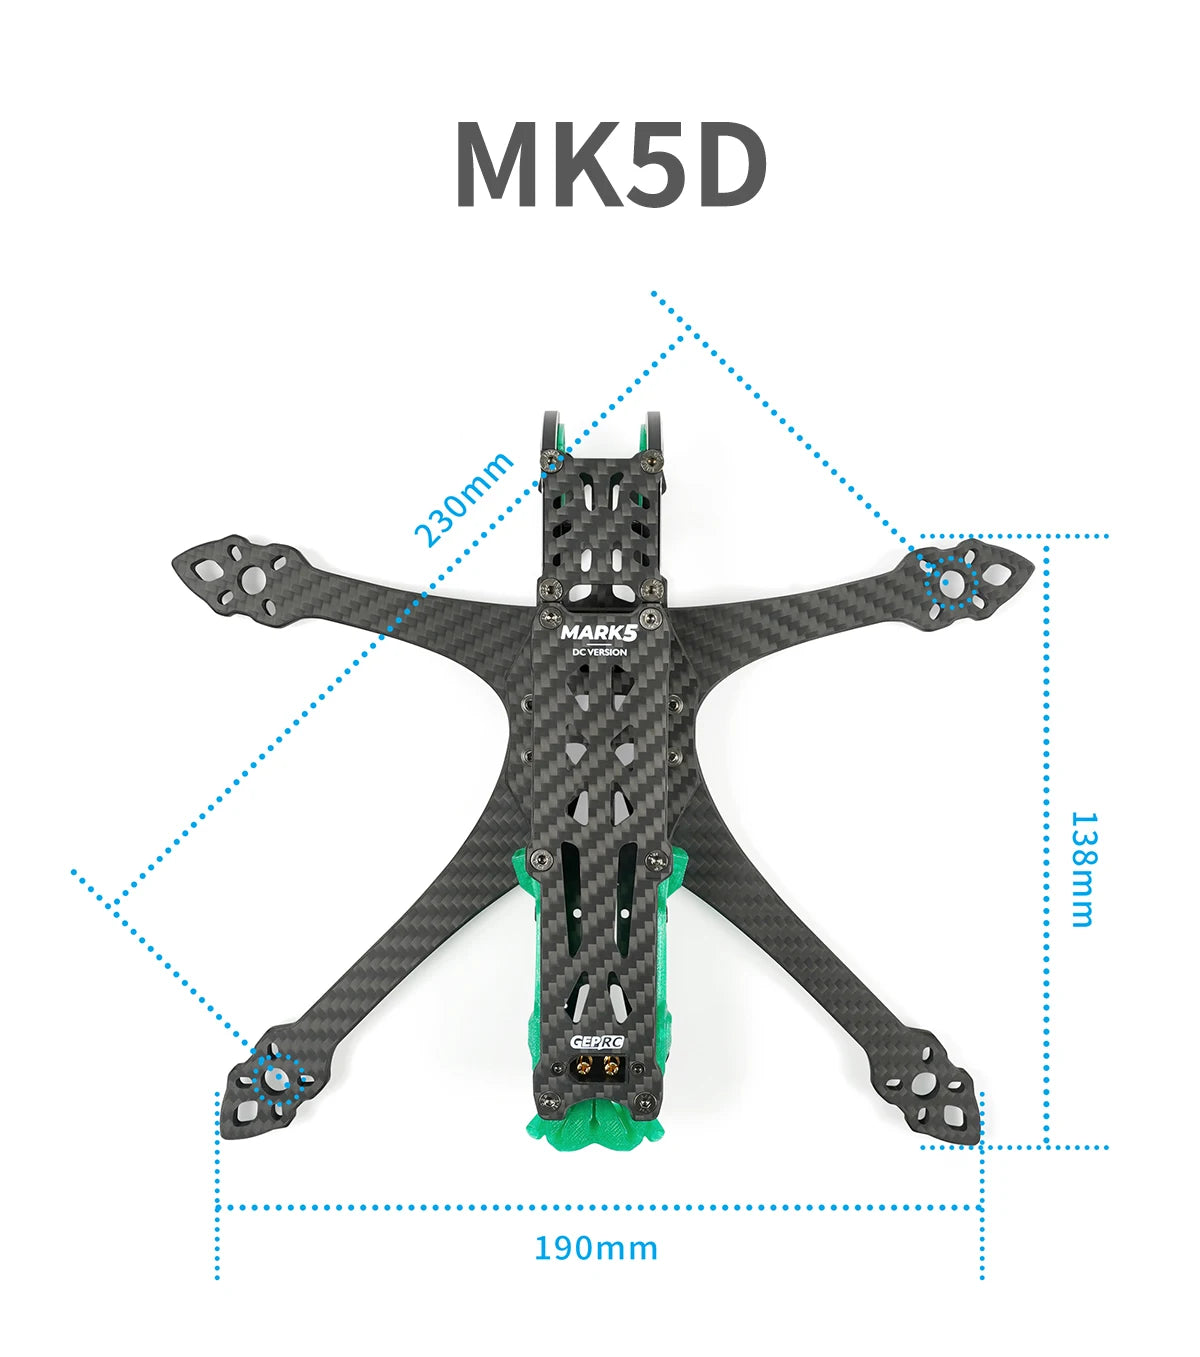 GEPRC GEP-MK5D O3 Frame, MKSD MARKS DCVERSION [ GEPRC 190mm 230